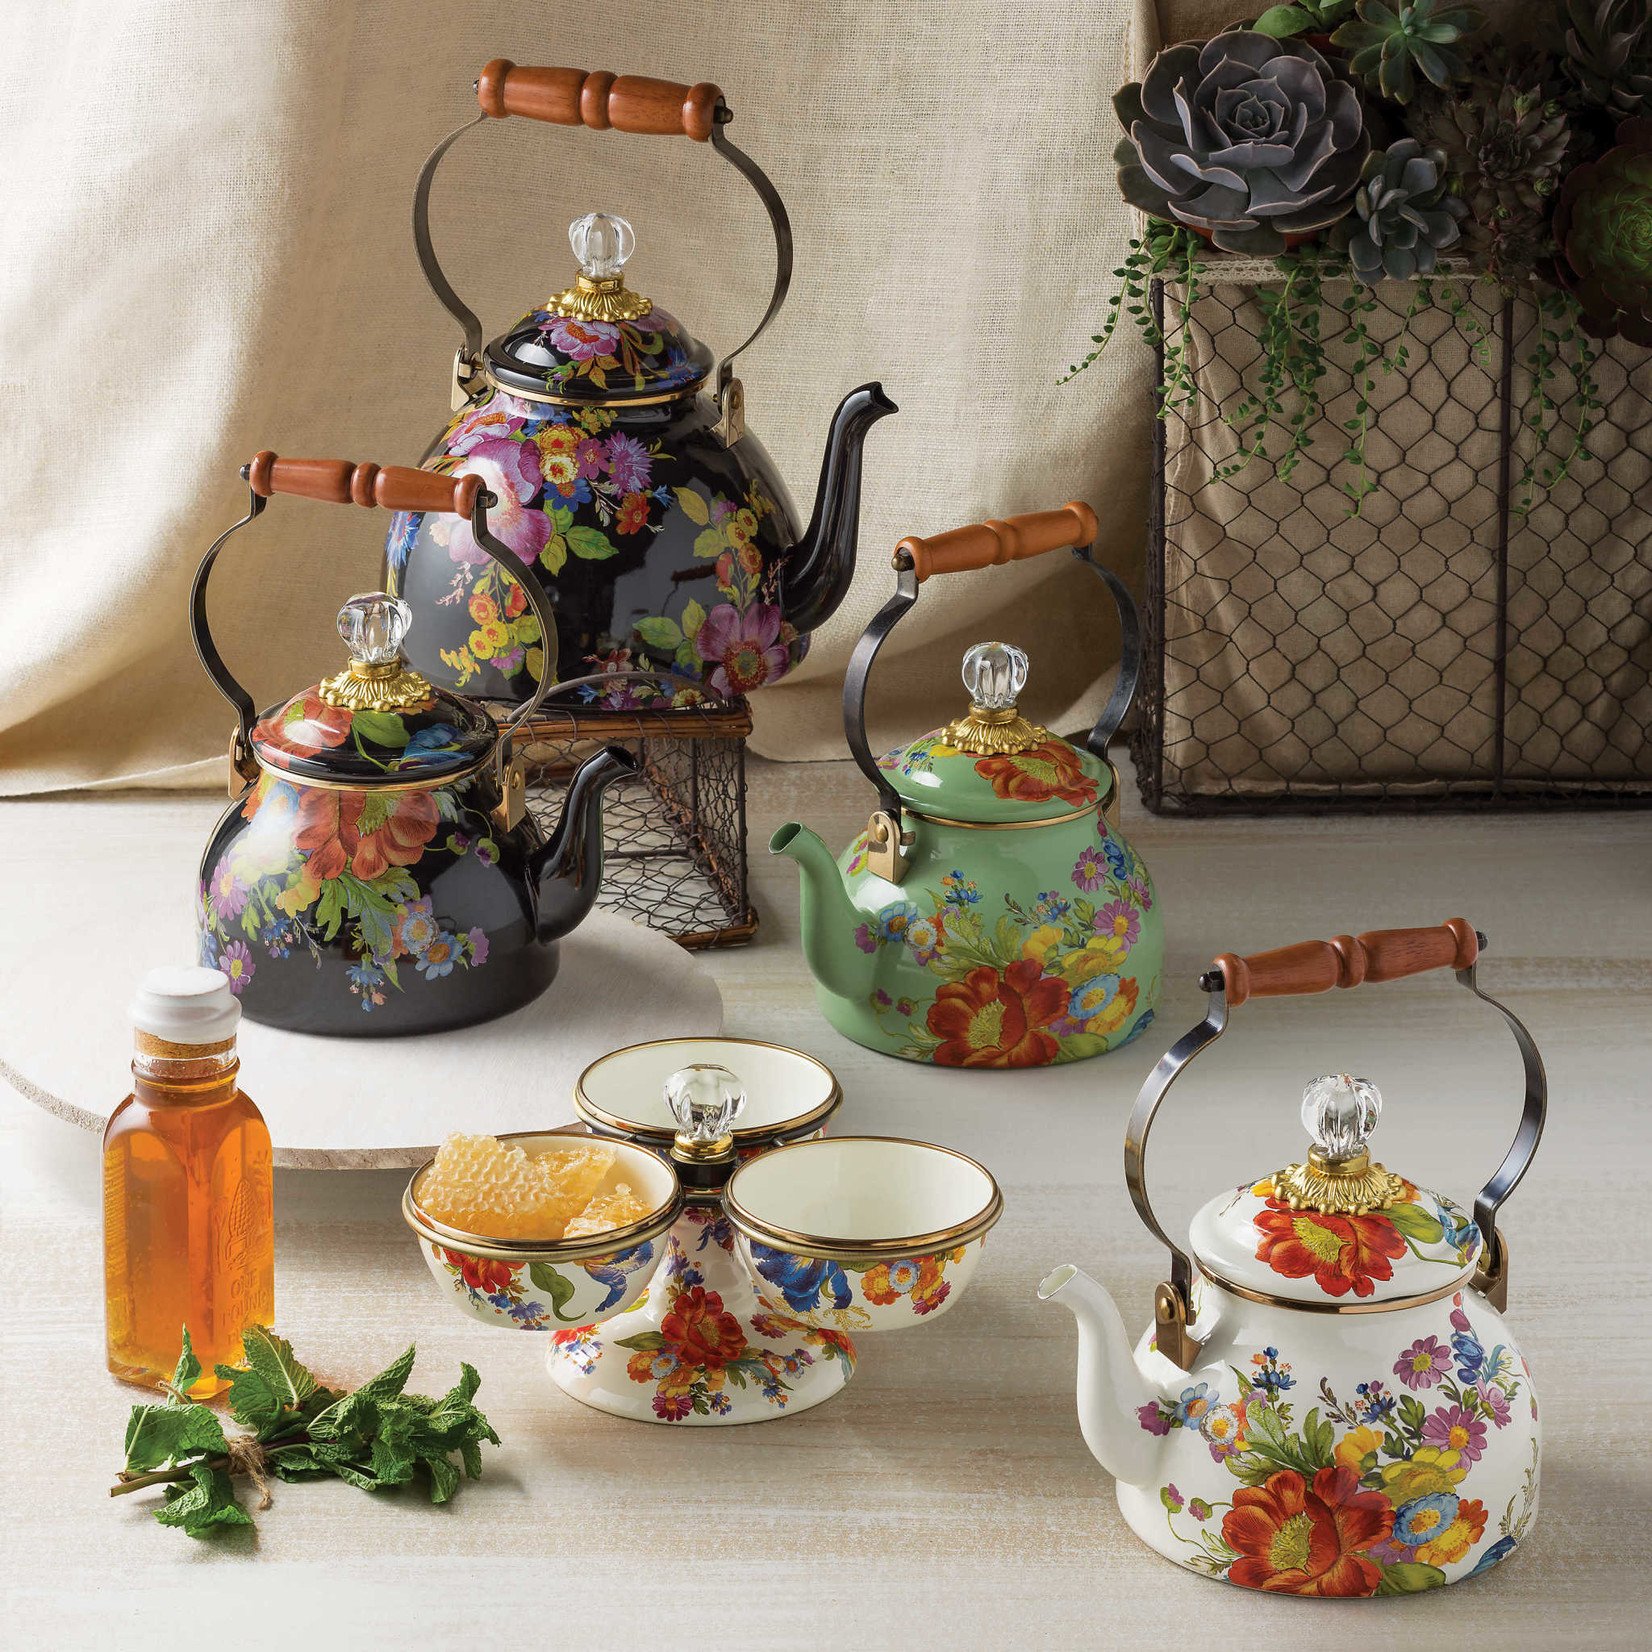 https://cdn.shoplightspeed.com/shops/654283/files/41698950/1652x1652x1/mackenzie-childs-flower-market-2-quart-tea-kettle.jpg